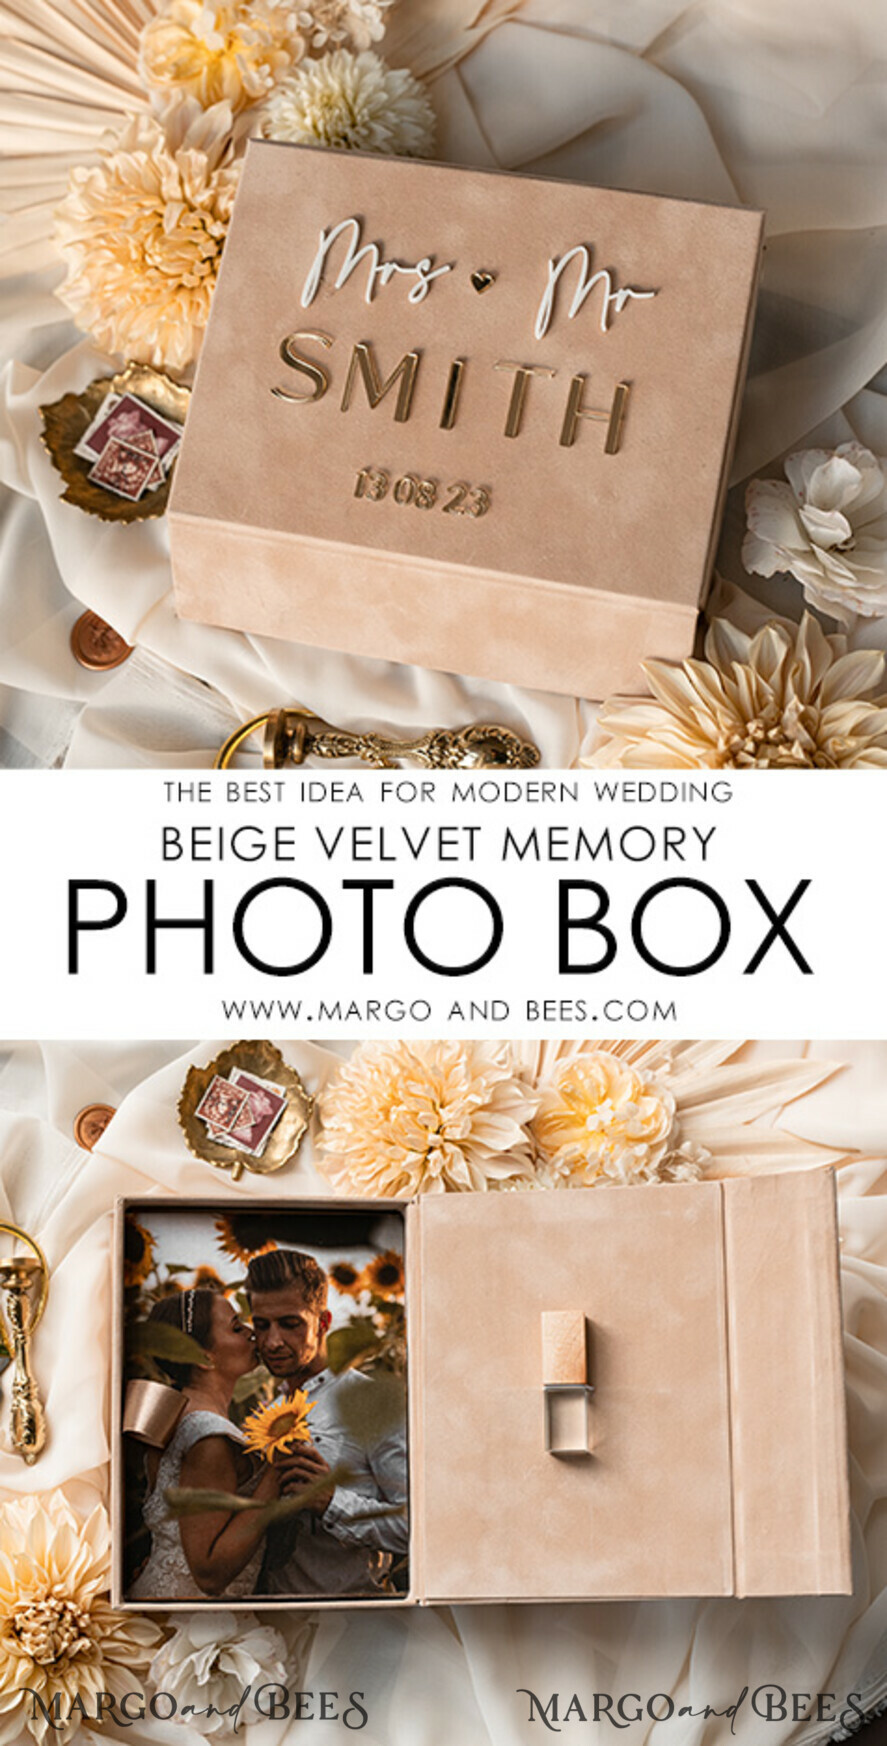 Large Velvet Wedding Slip-In Photo Album With SlipCase, Photo album black  Sleeves for 500 4x6